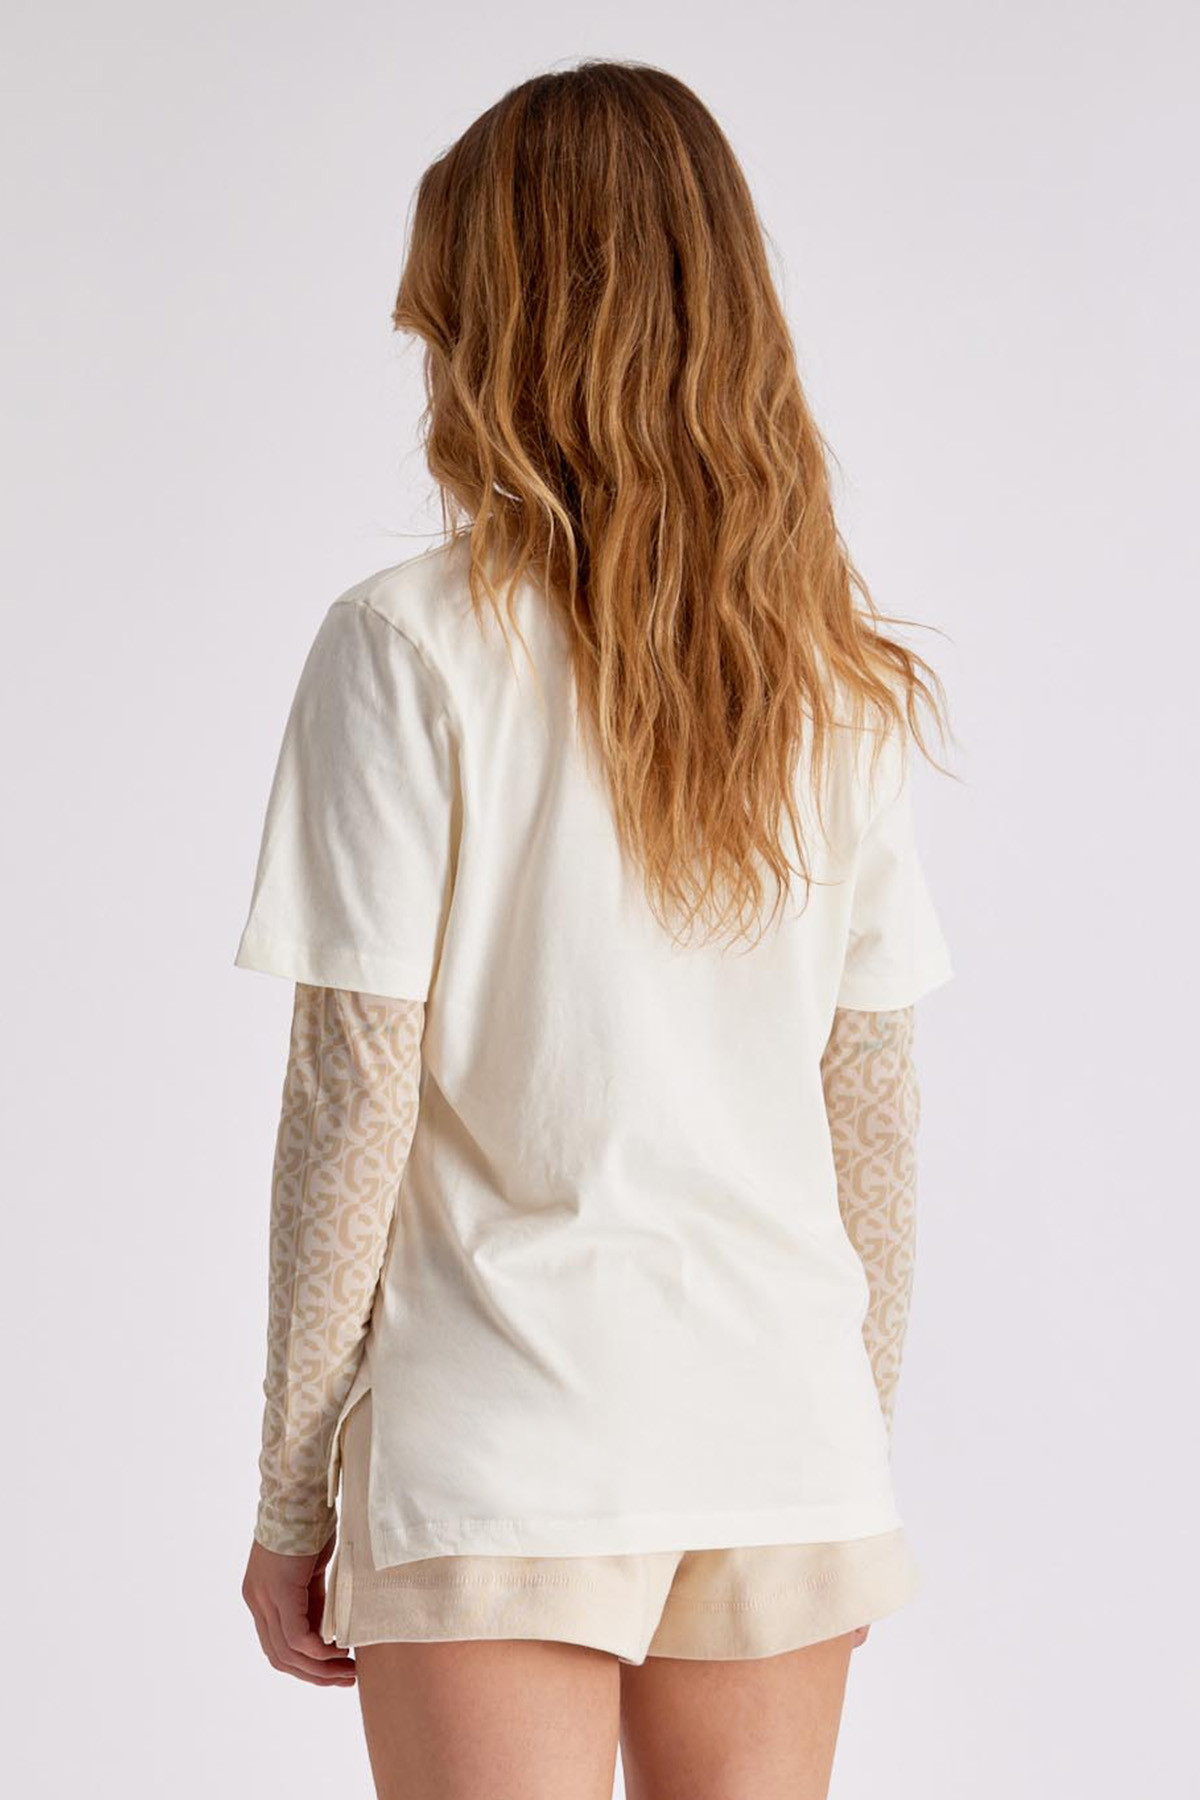 Lison White printed T-shirt